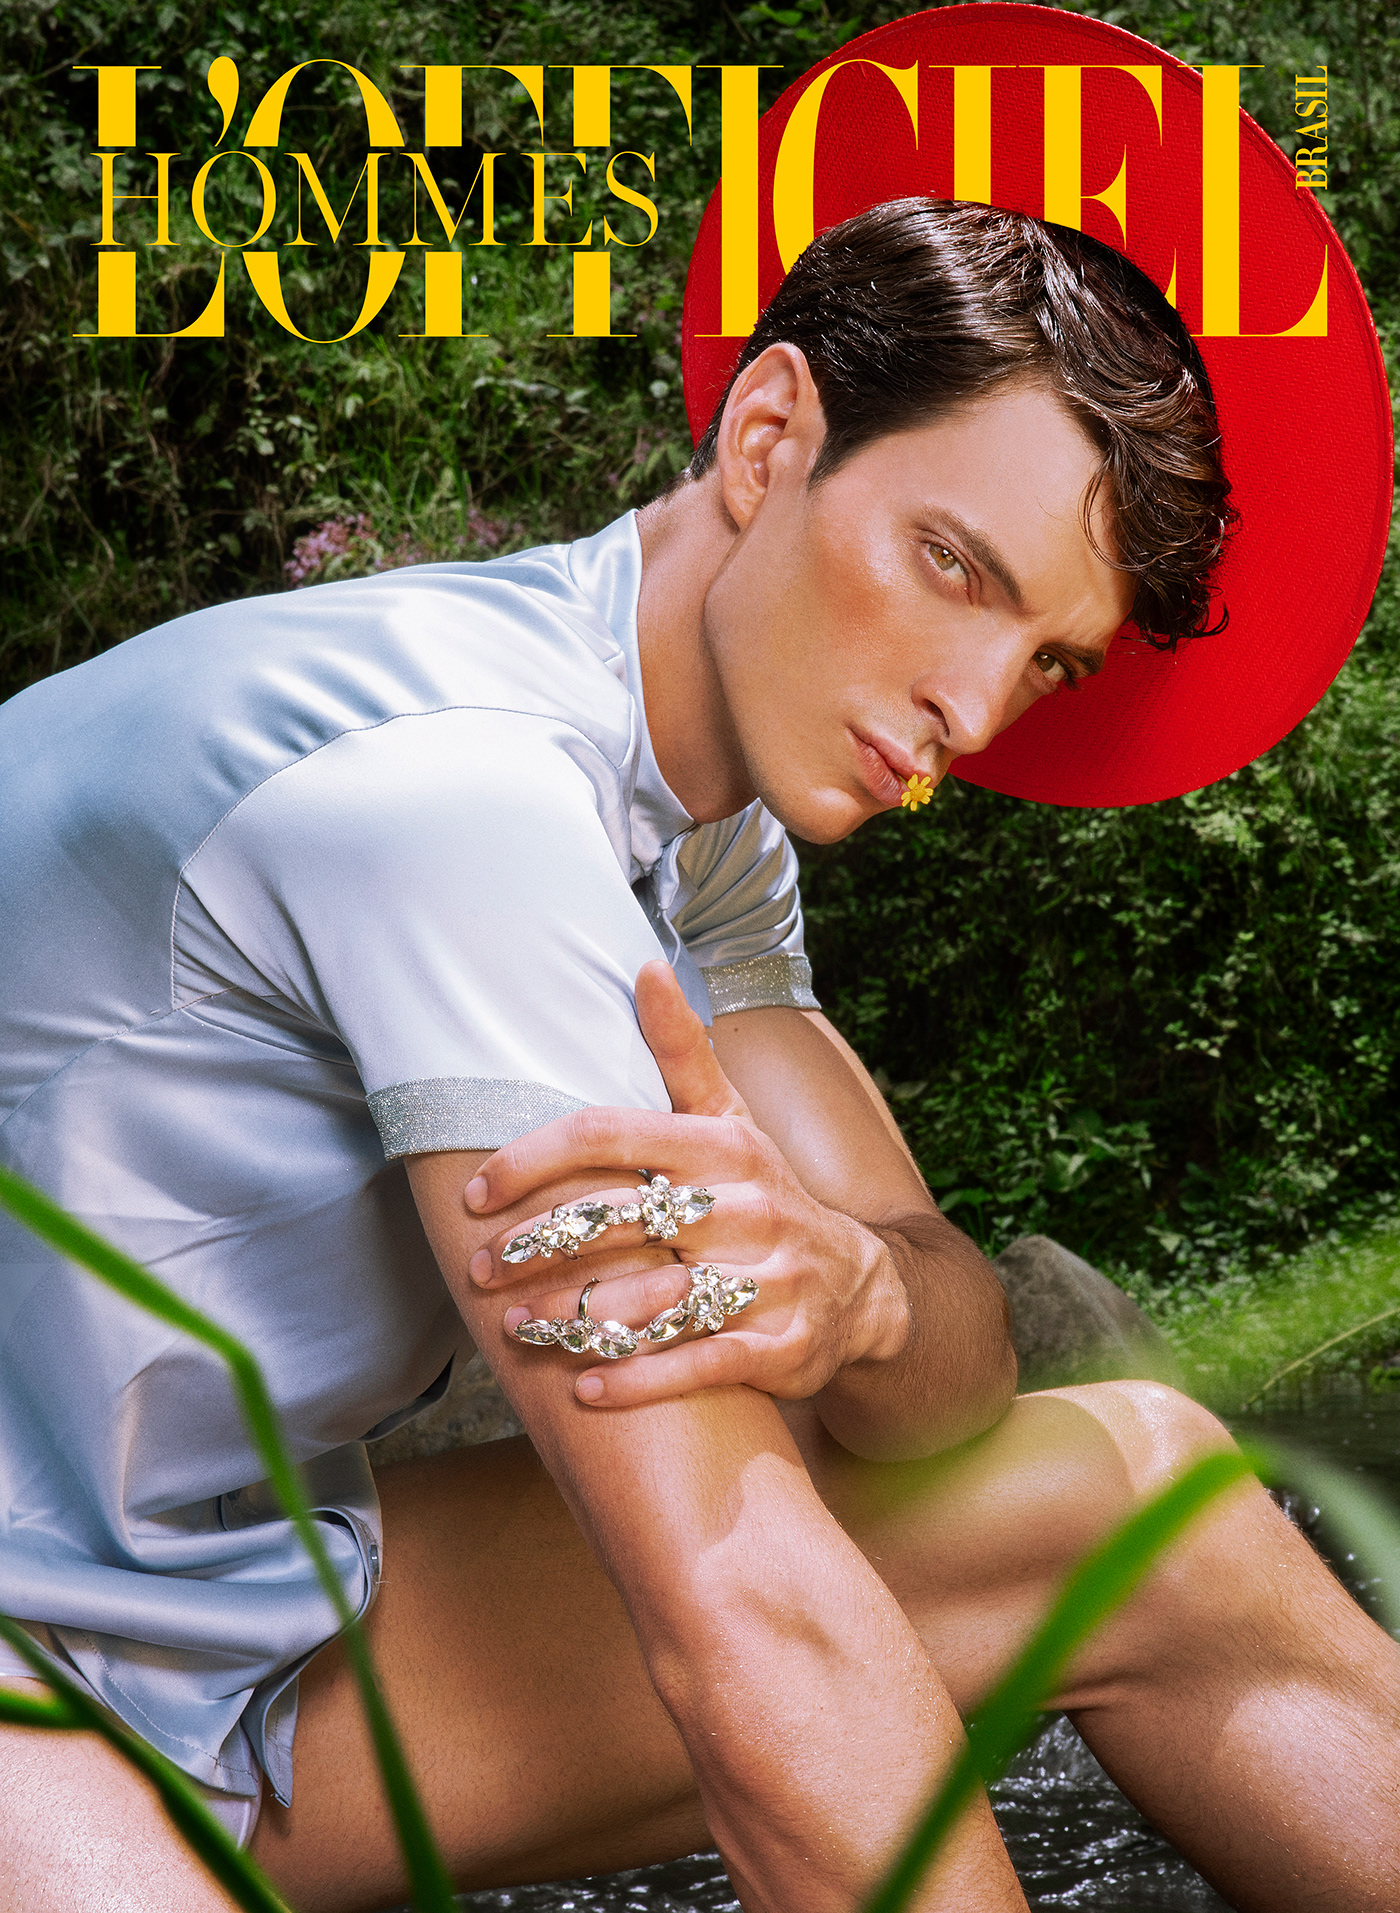 Brasil FIT Hommes jvdas berra Lofficiel magazine male male model